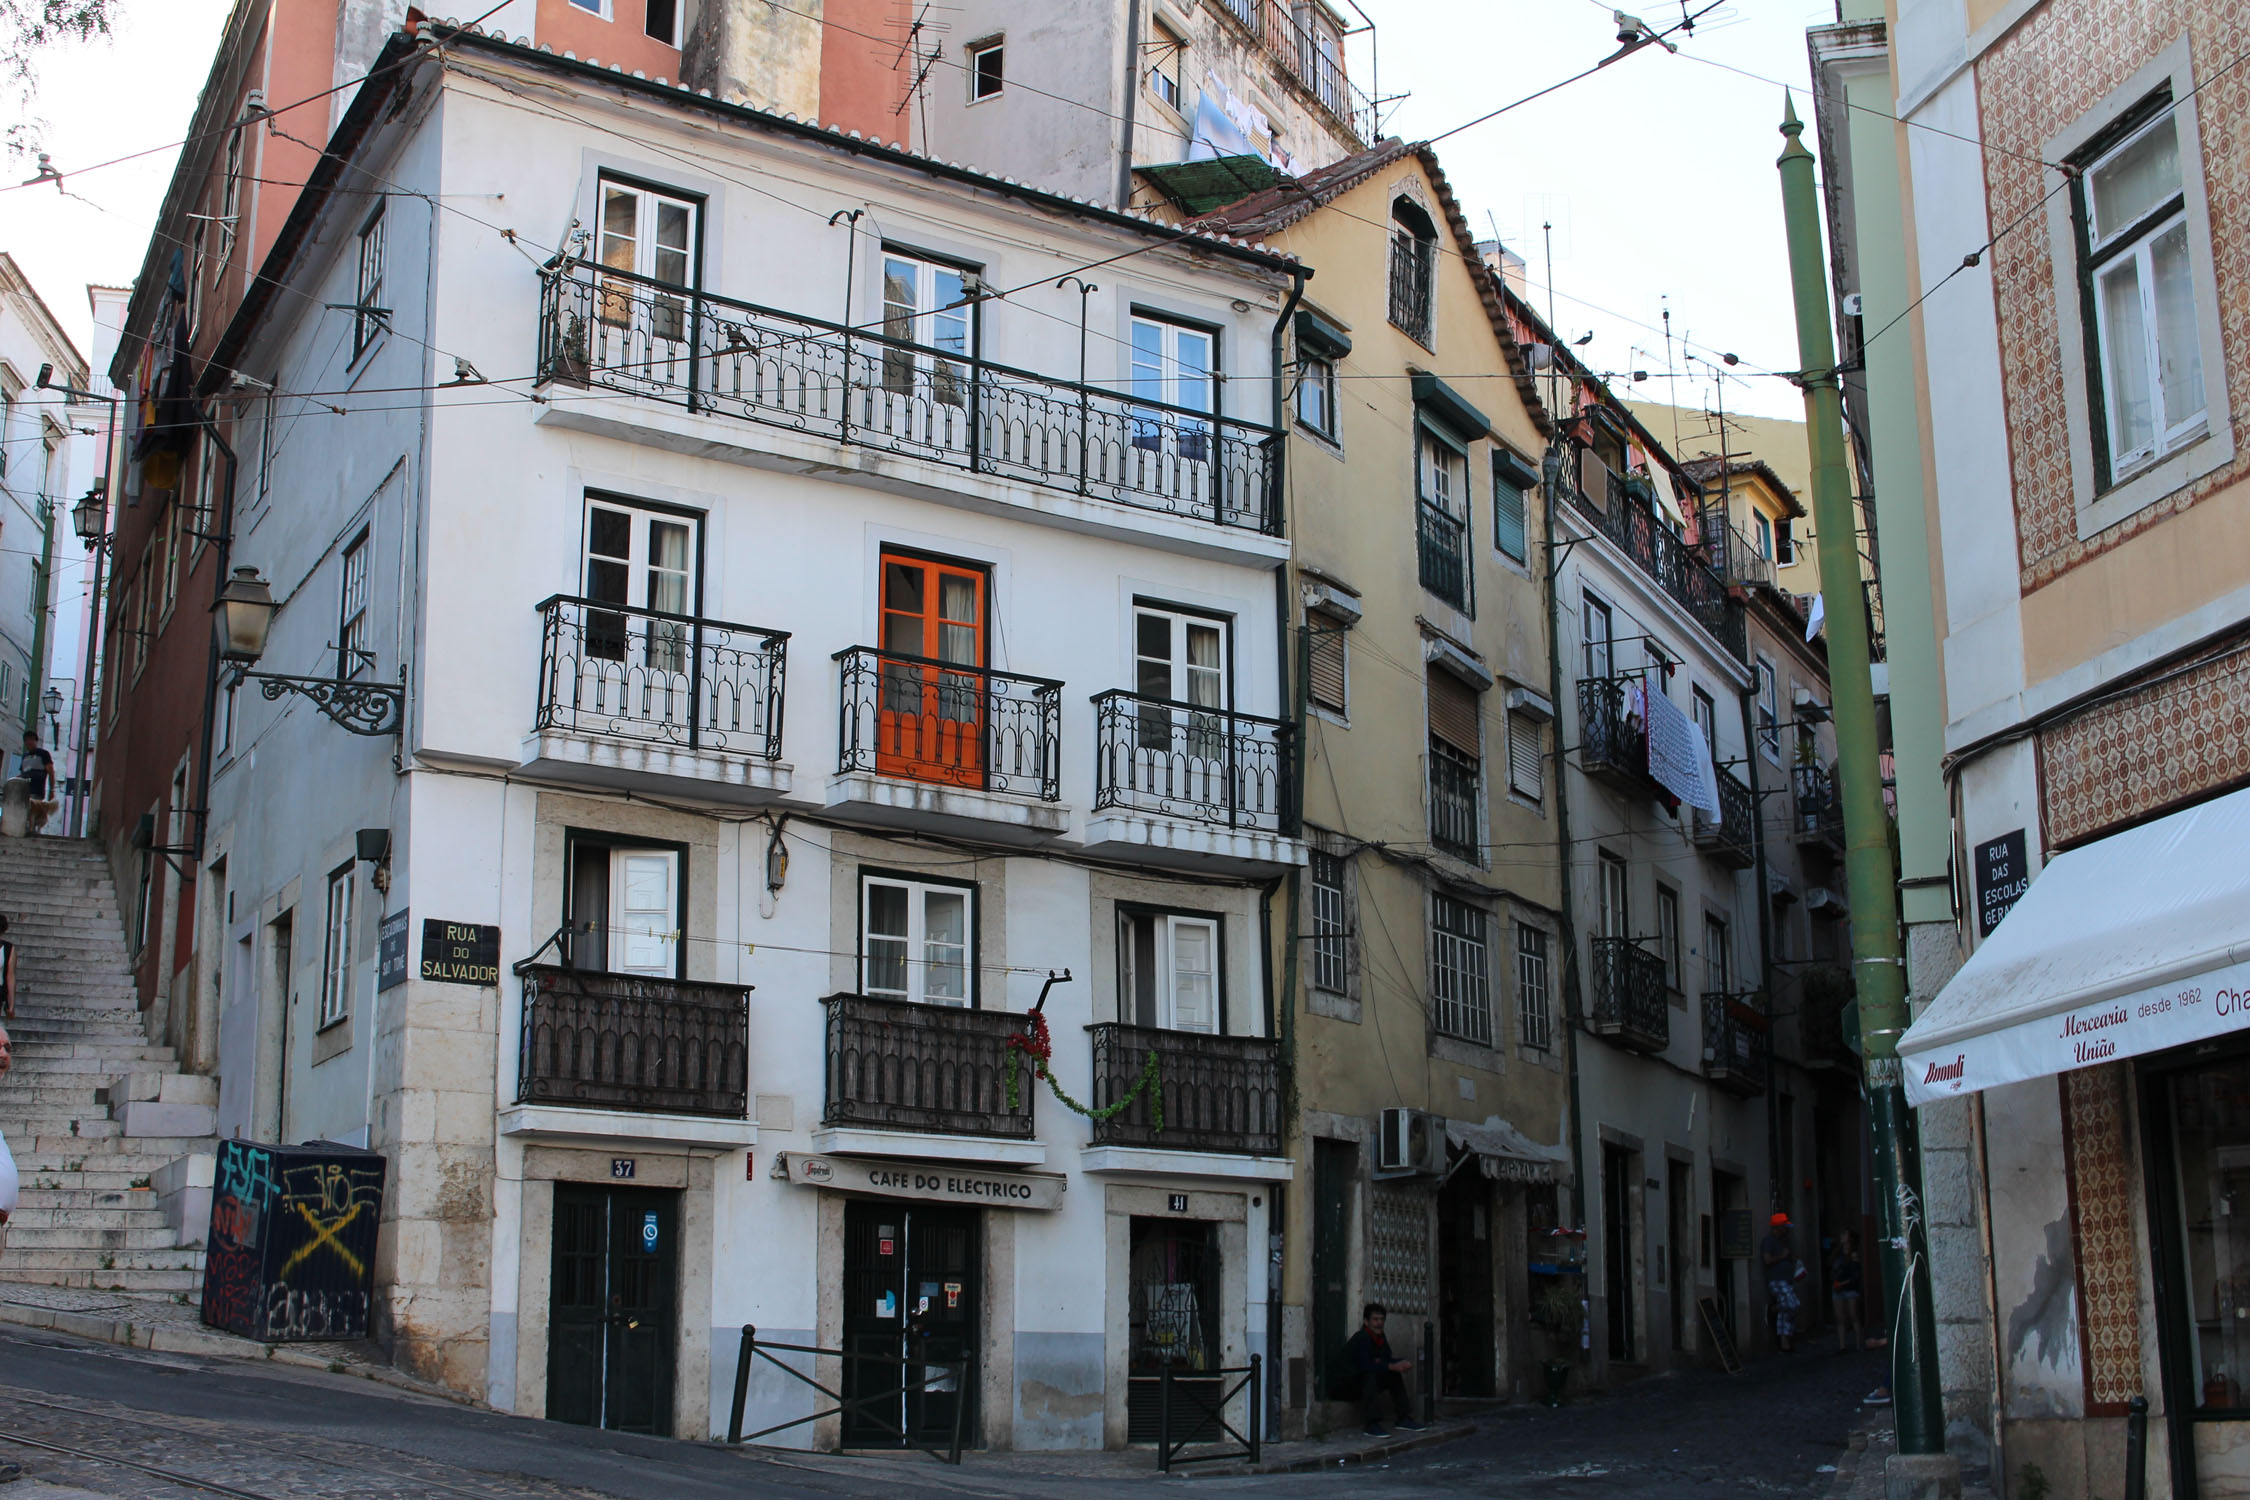 Lisbonne, rua do Oliveirinha, maison